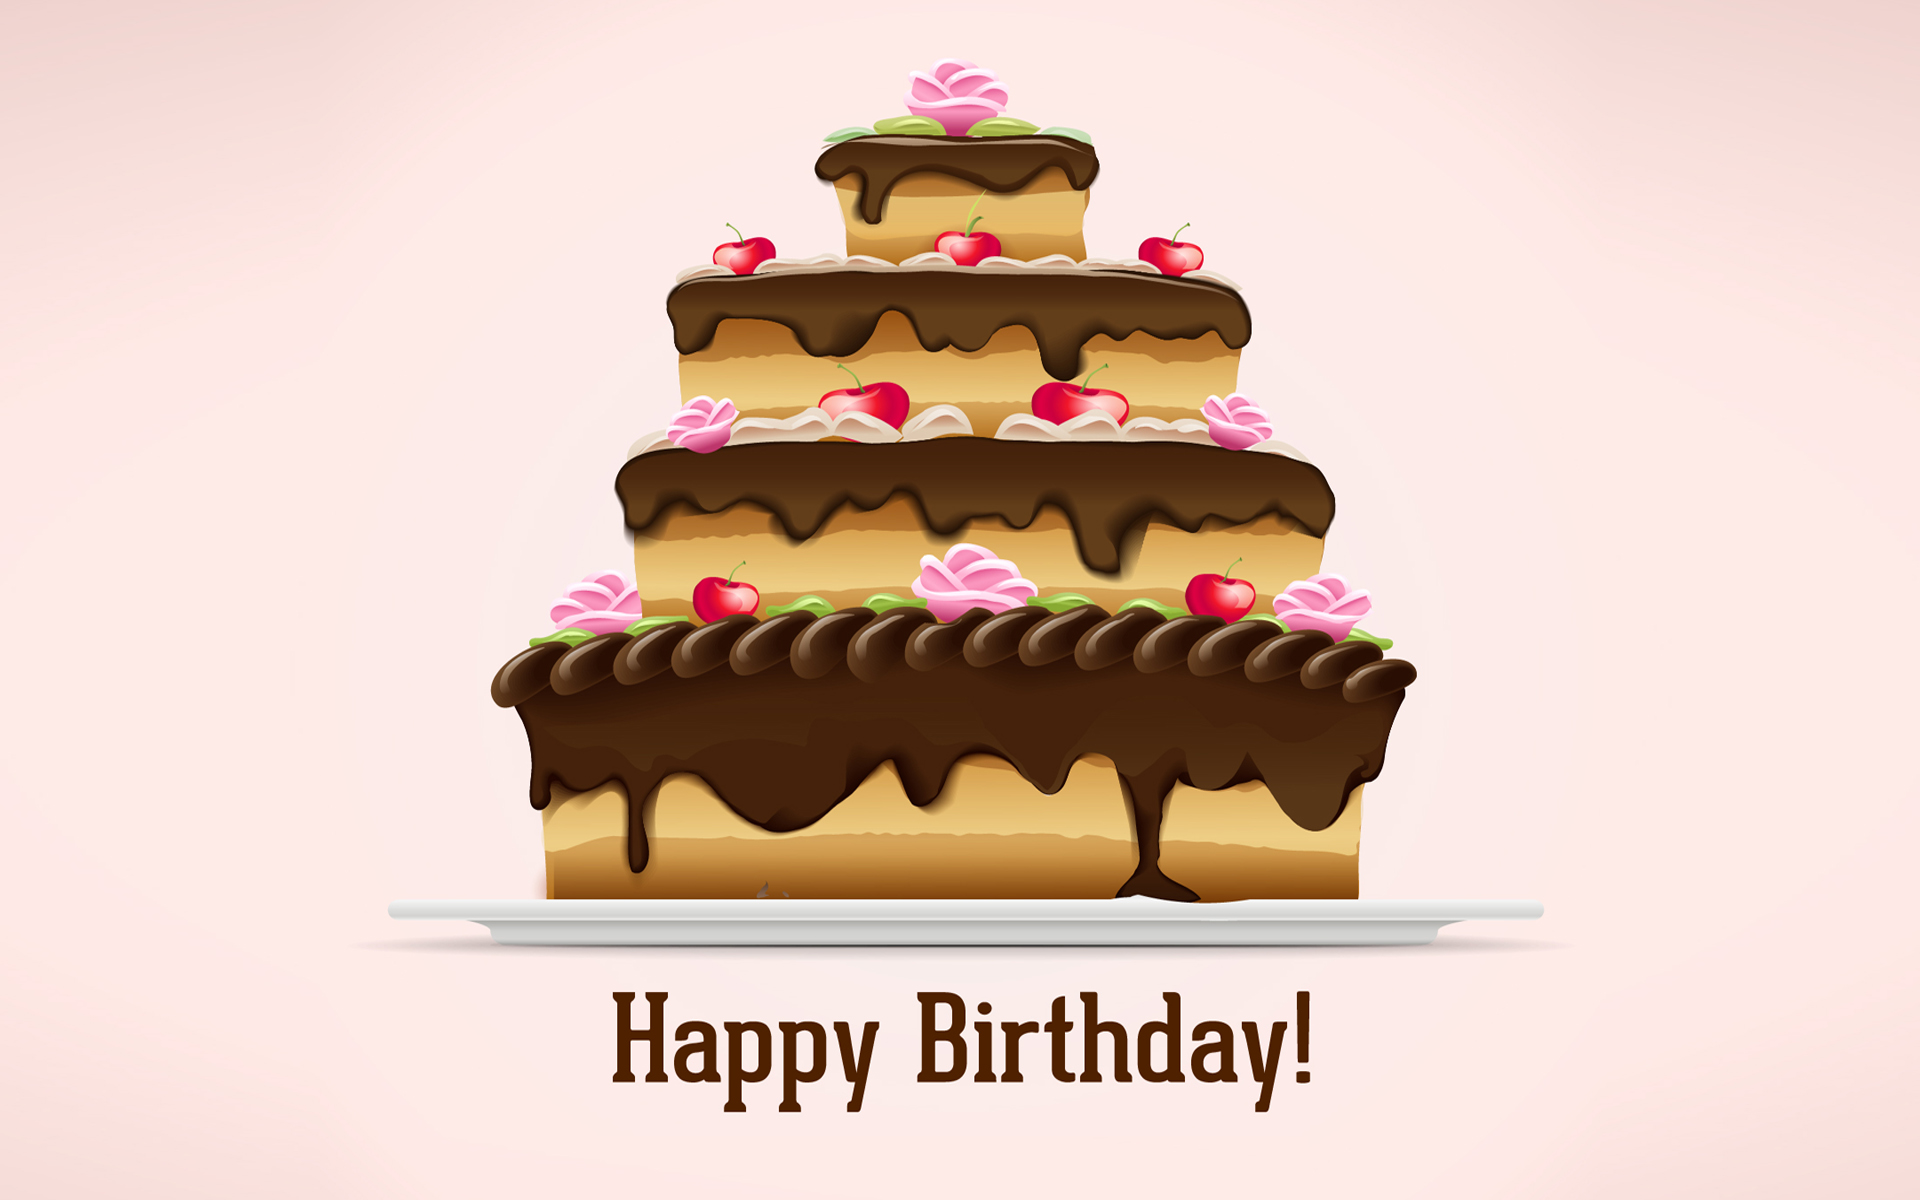 Happy Birthday Cake Pictures | PixelsTalk.Net